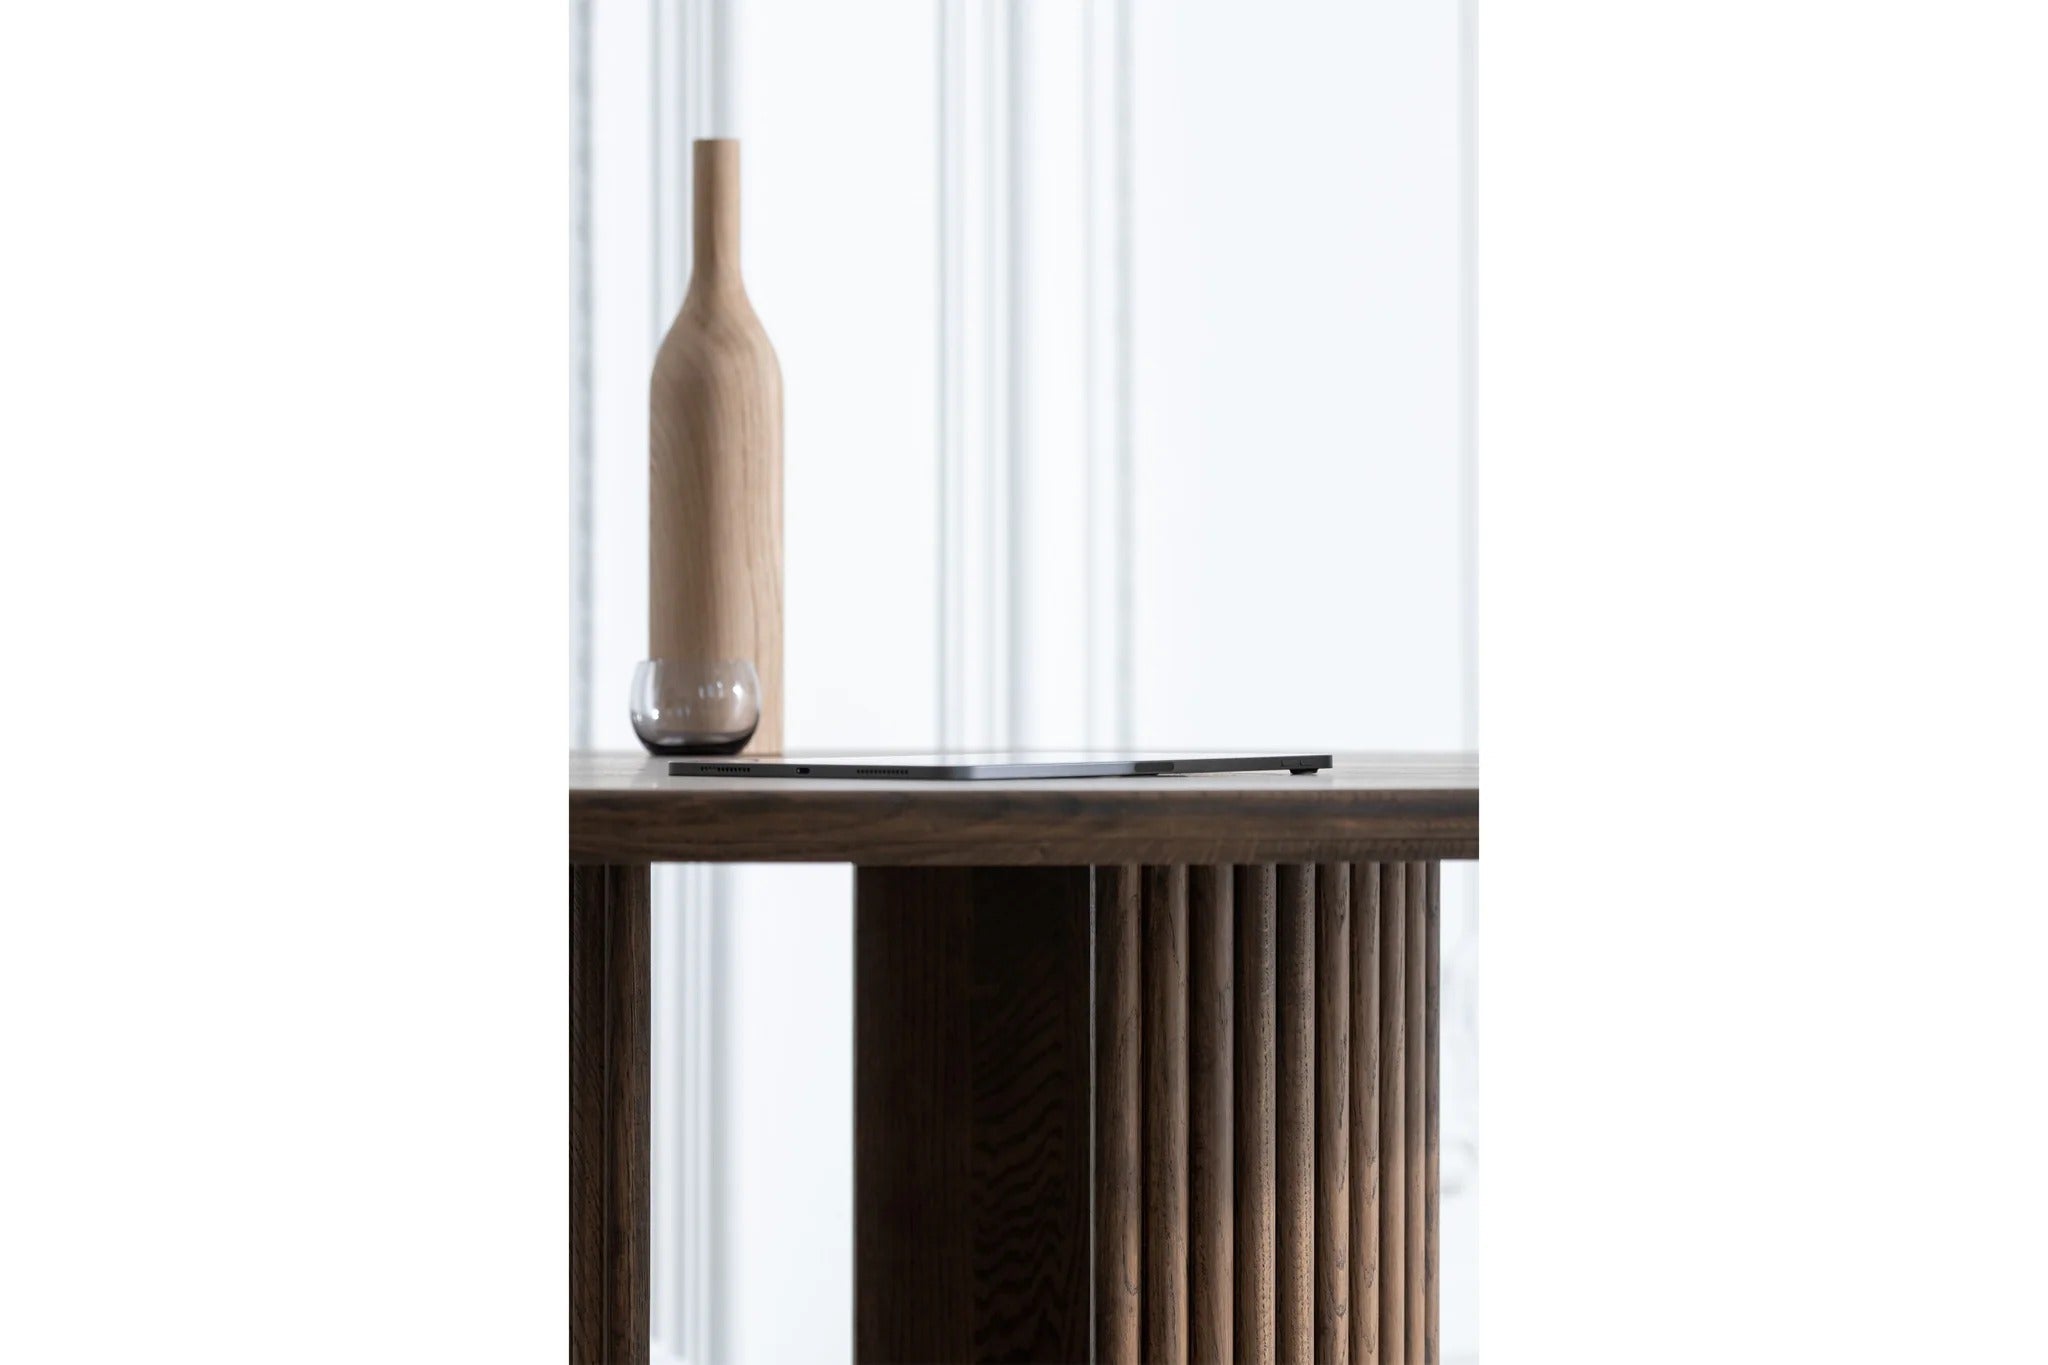 Minimalistische Dekoration mit einer schlichten Flasche aus Holz auf dem GROOVE Esstisch rund, der die natürliche Holzmaserung betont